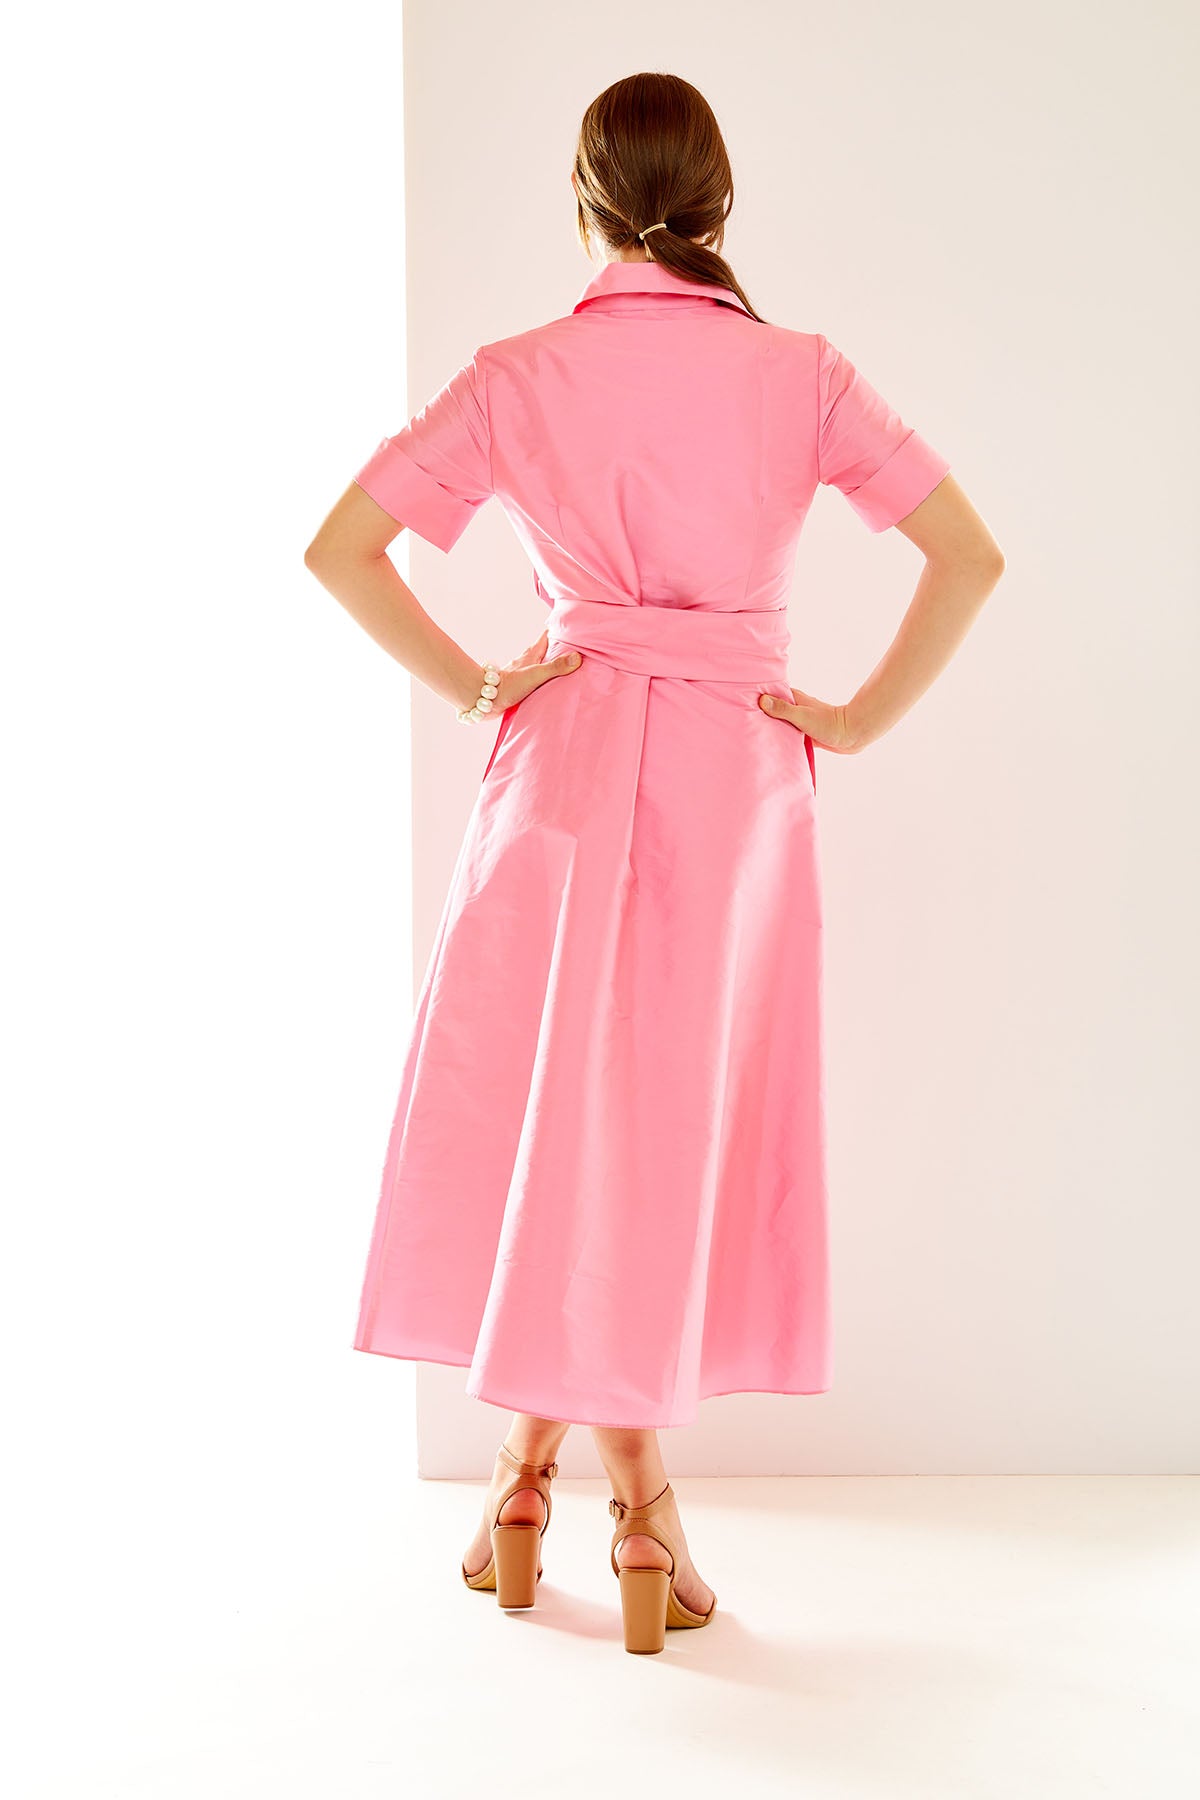 Woman in bubblegum pink midi dress